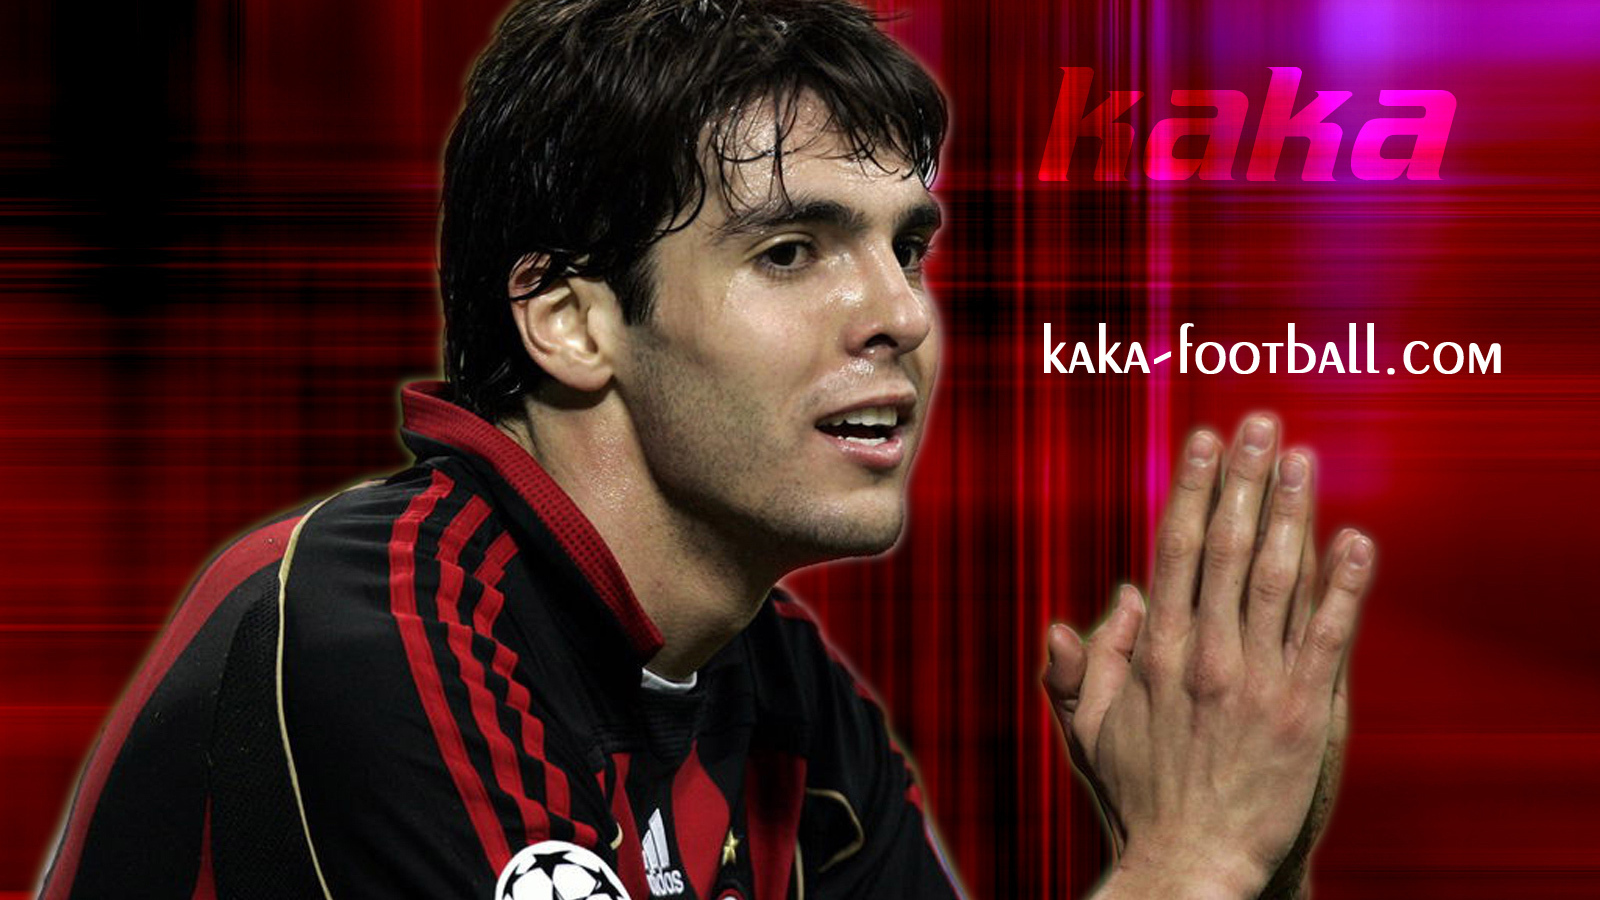 The irreplaceable halfback of Milan Kaka